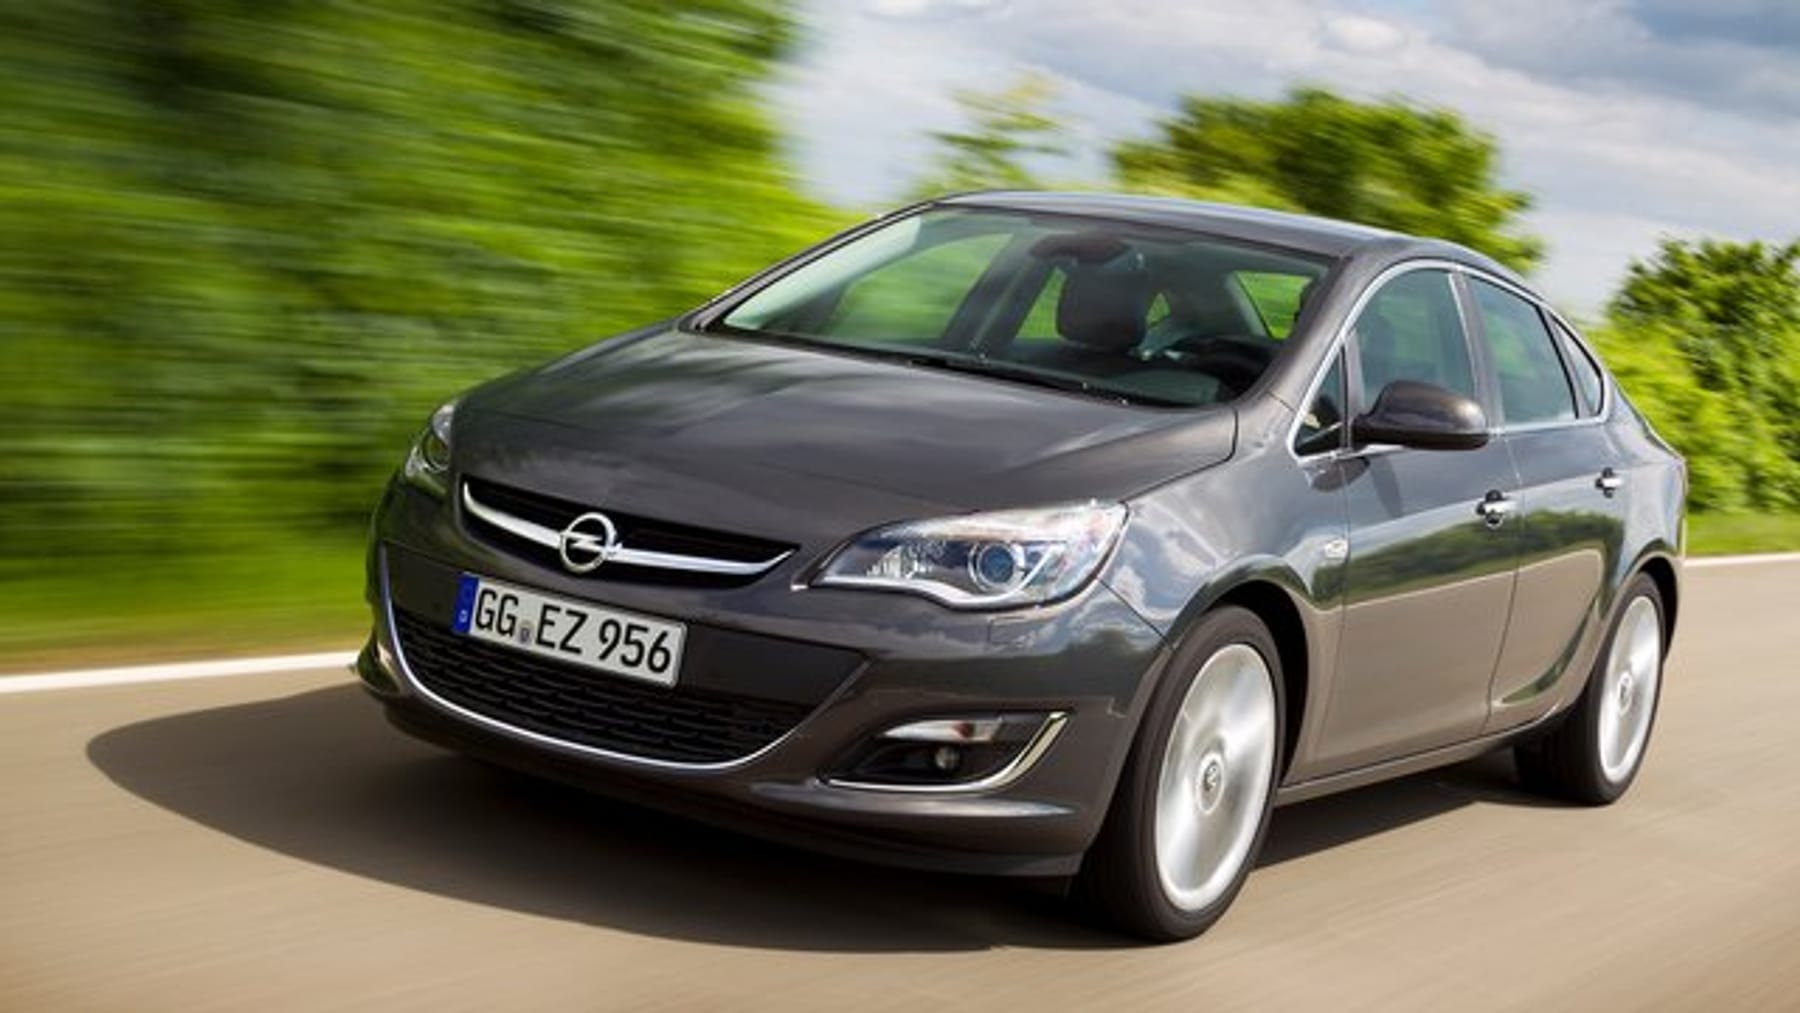 Gute Fahreigenschaften: Der Opel Astra (seit 2009) zeigt im Alter